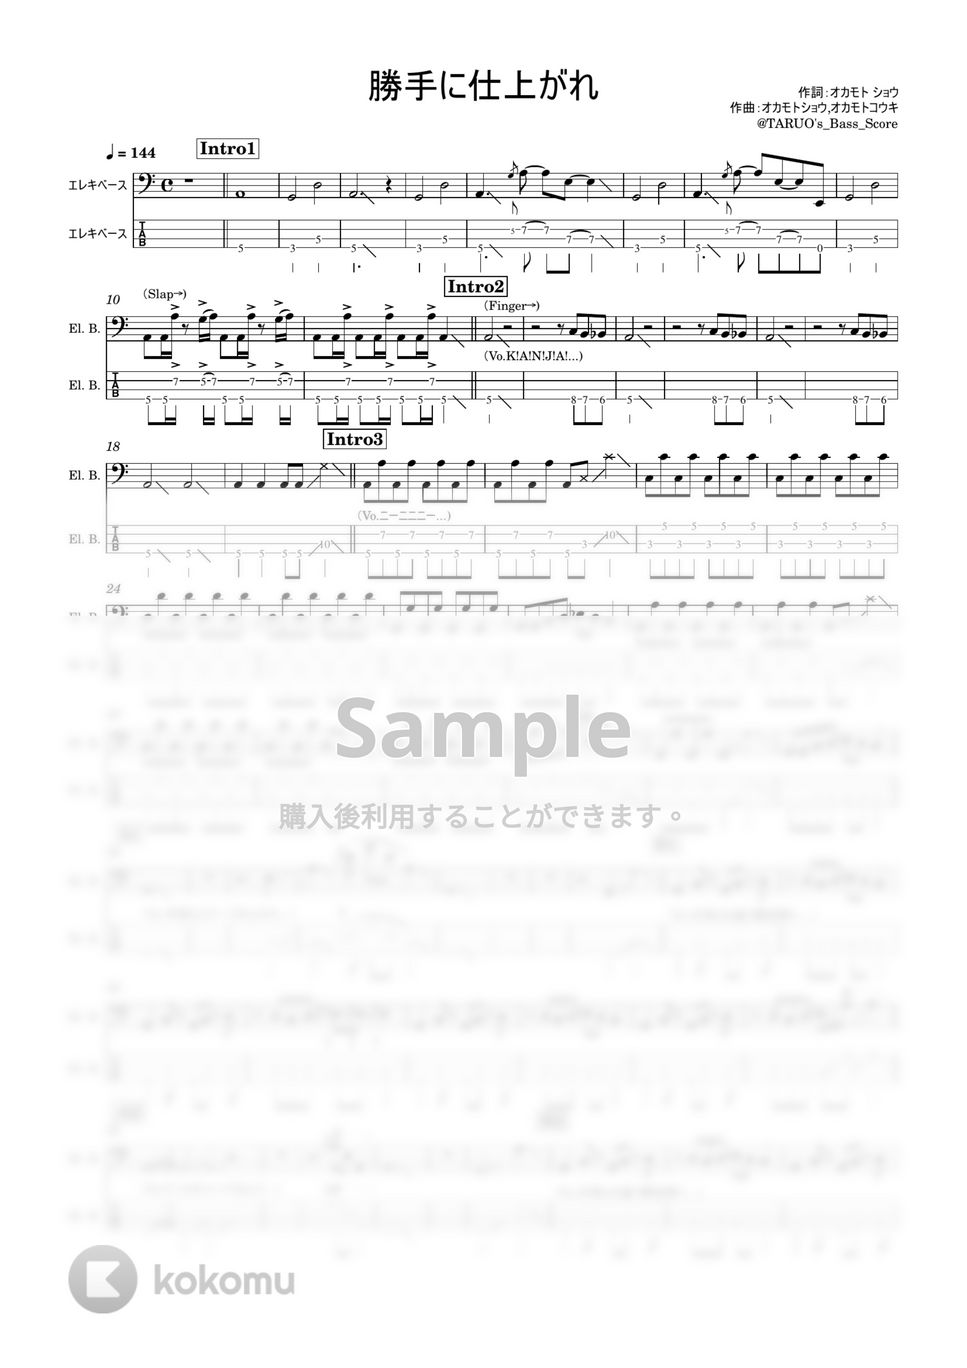 関ジャニ∞ - 勝手に仕上がれ (ベース/TAB/楽譜) by TARUO's_Bass_Score